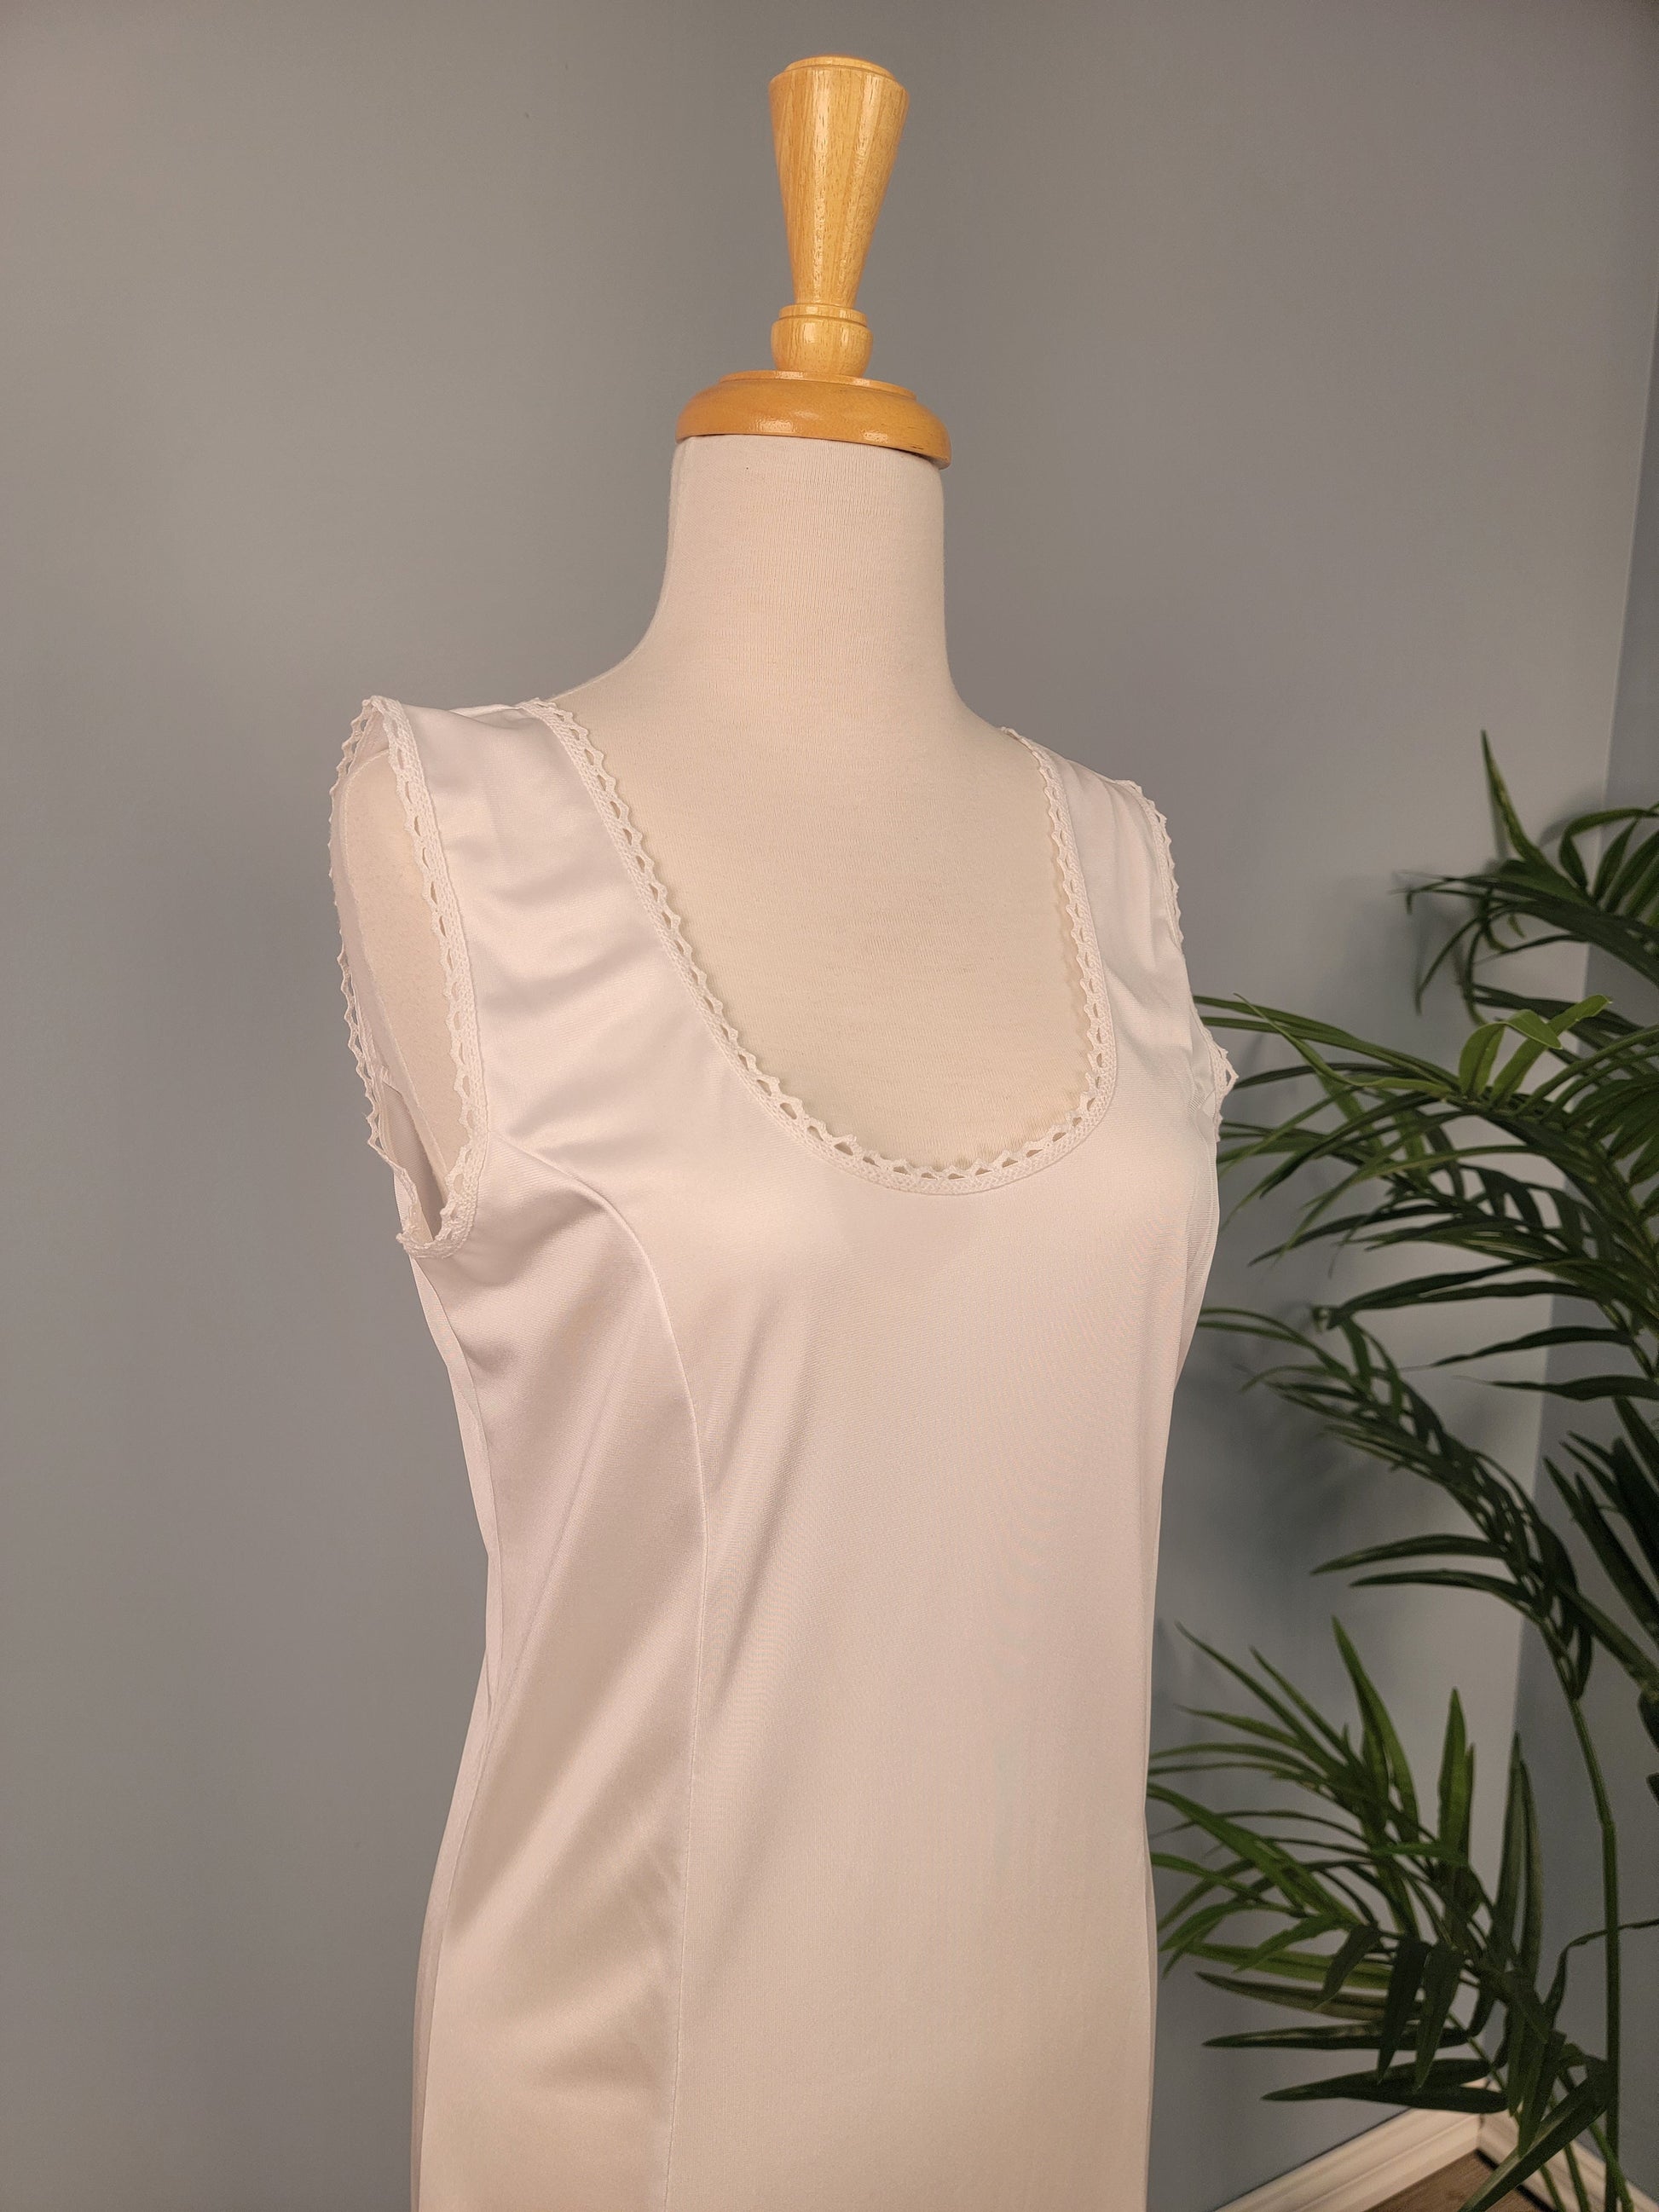 Women full slips modal cotton blend v neck straight dress